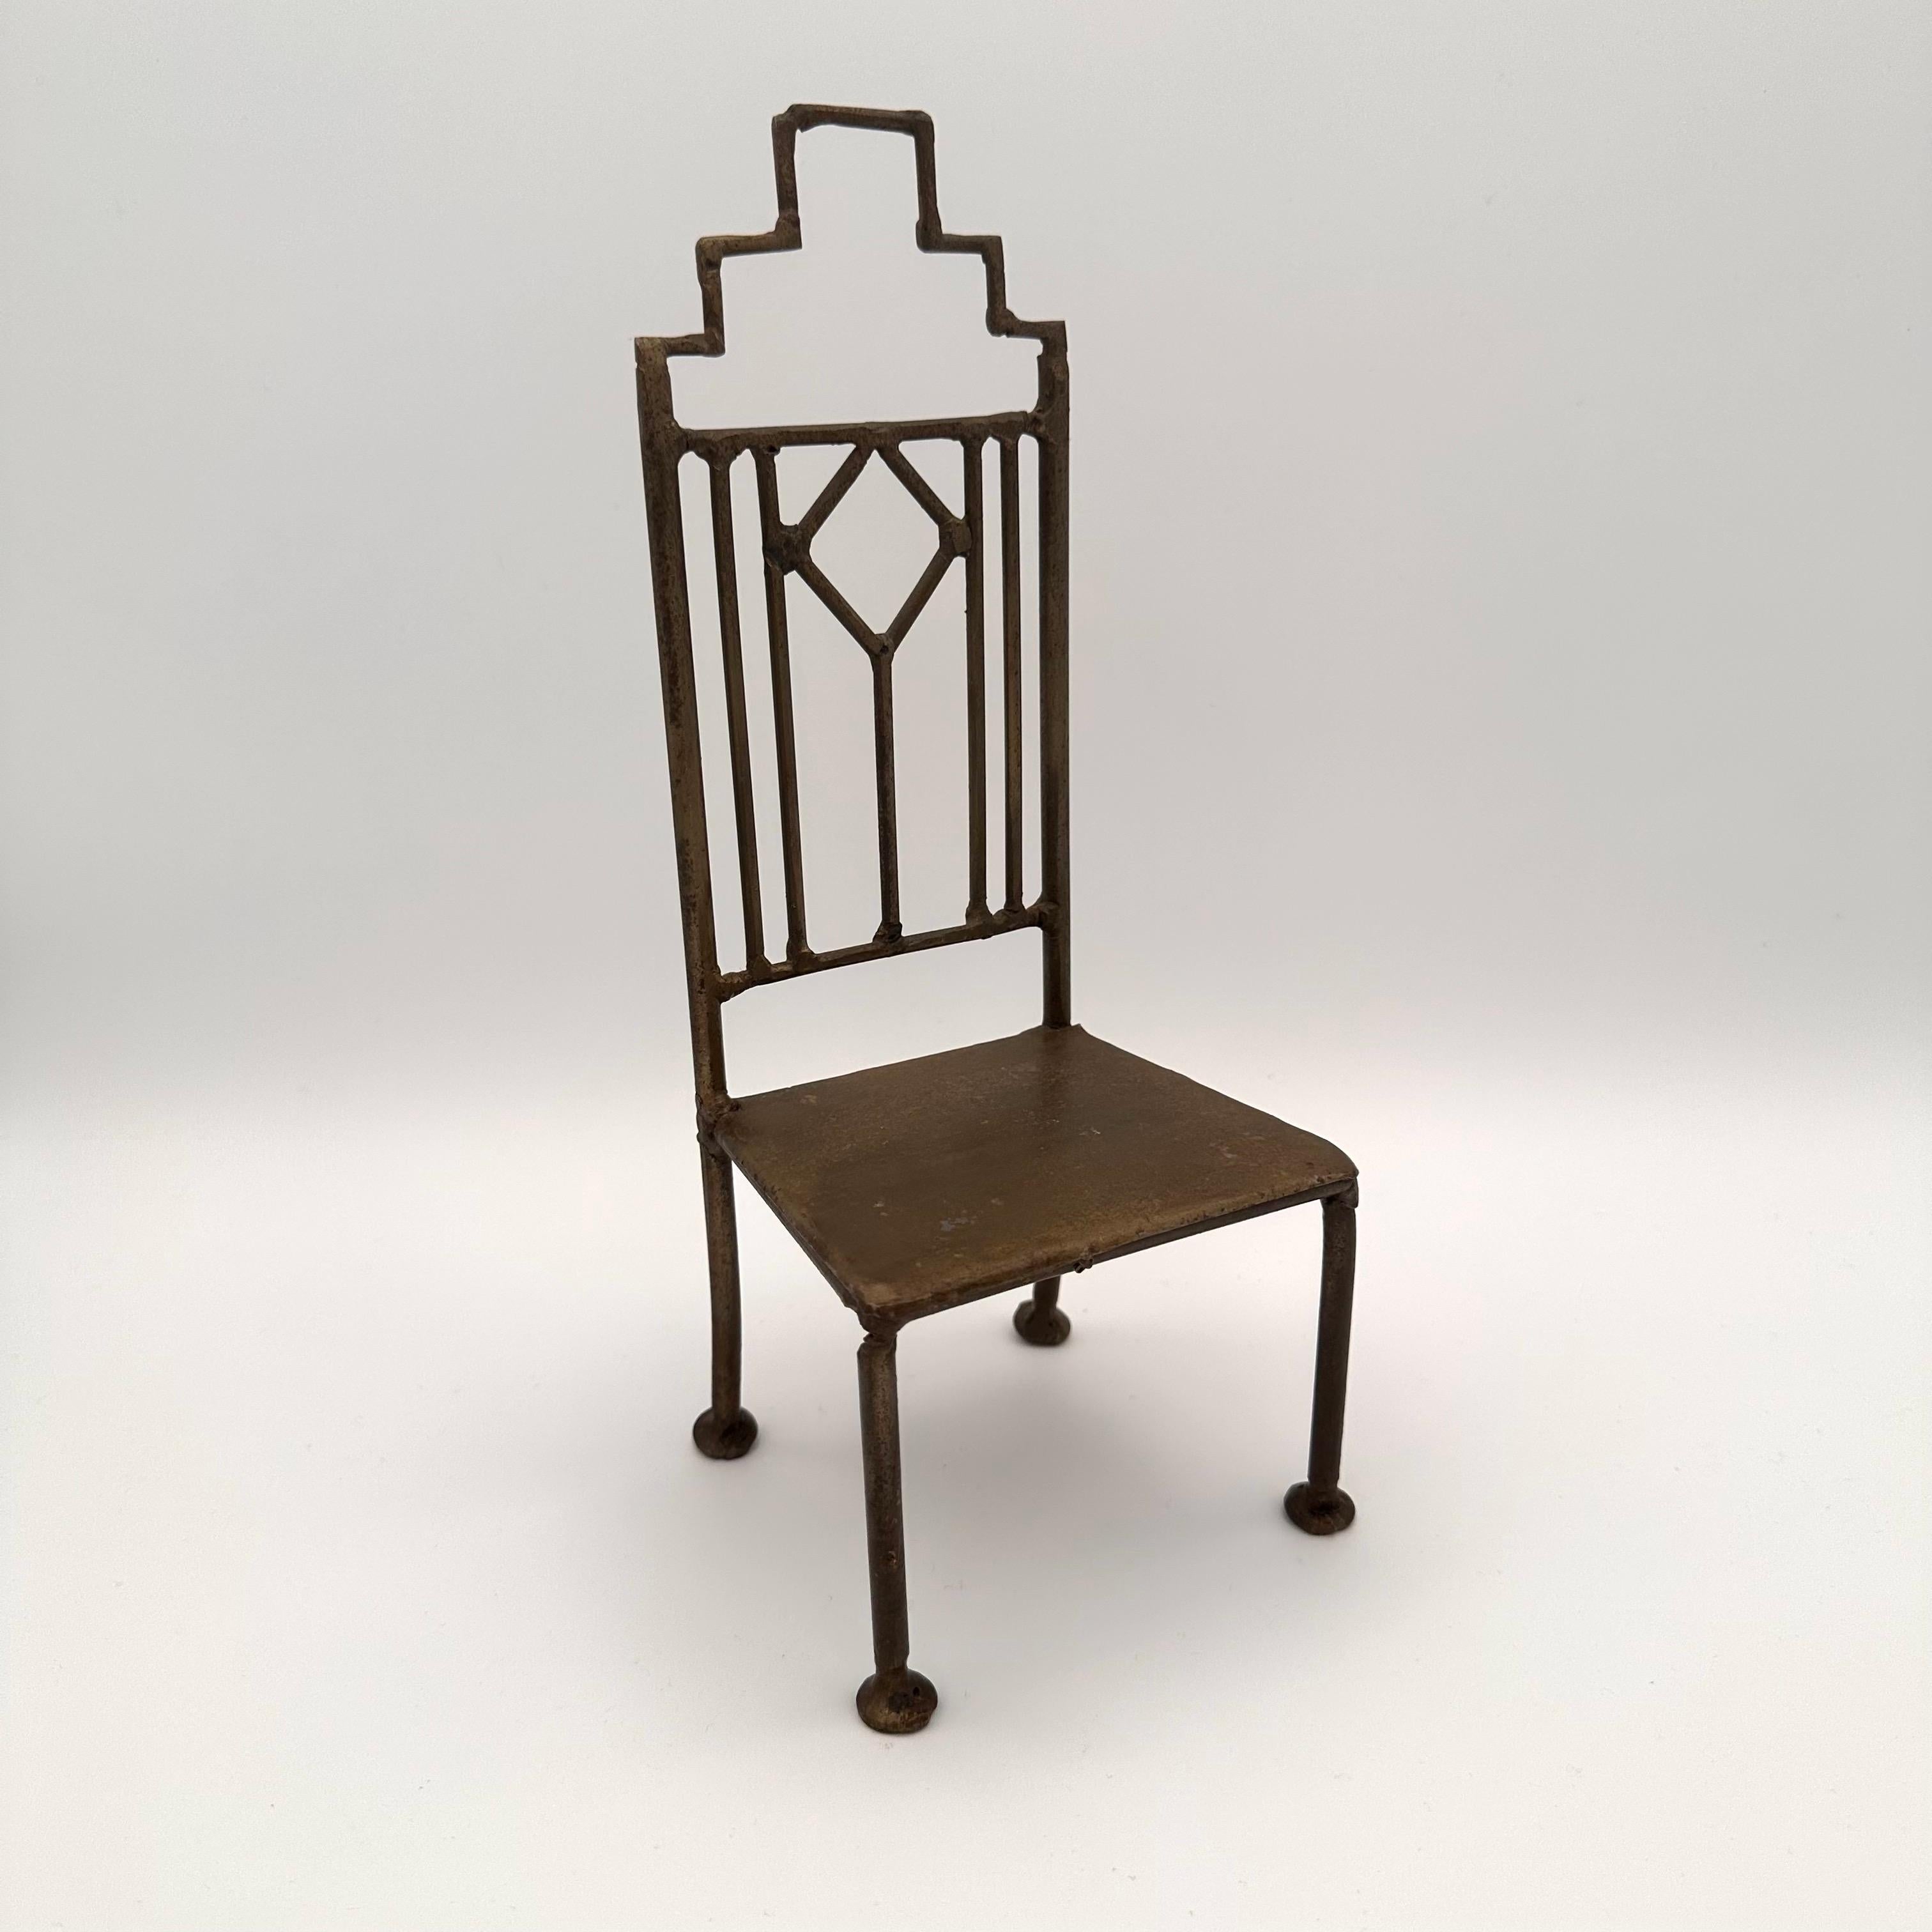 Einzigartiger handgefertigter Vintage-Miniatur-Metallstuhl. Art Deco inspiriert mit einem geometrischen, wolkenkratzerähnlichen Rauten- und Rechteckmuster auf der Rückseite. Die Sitzfläche ist flach und kann eine Kerze oder eine kleine Pflanze